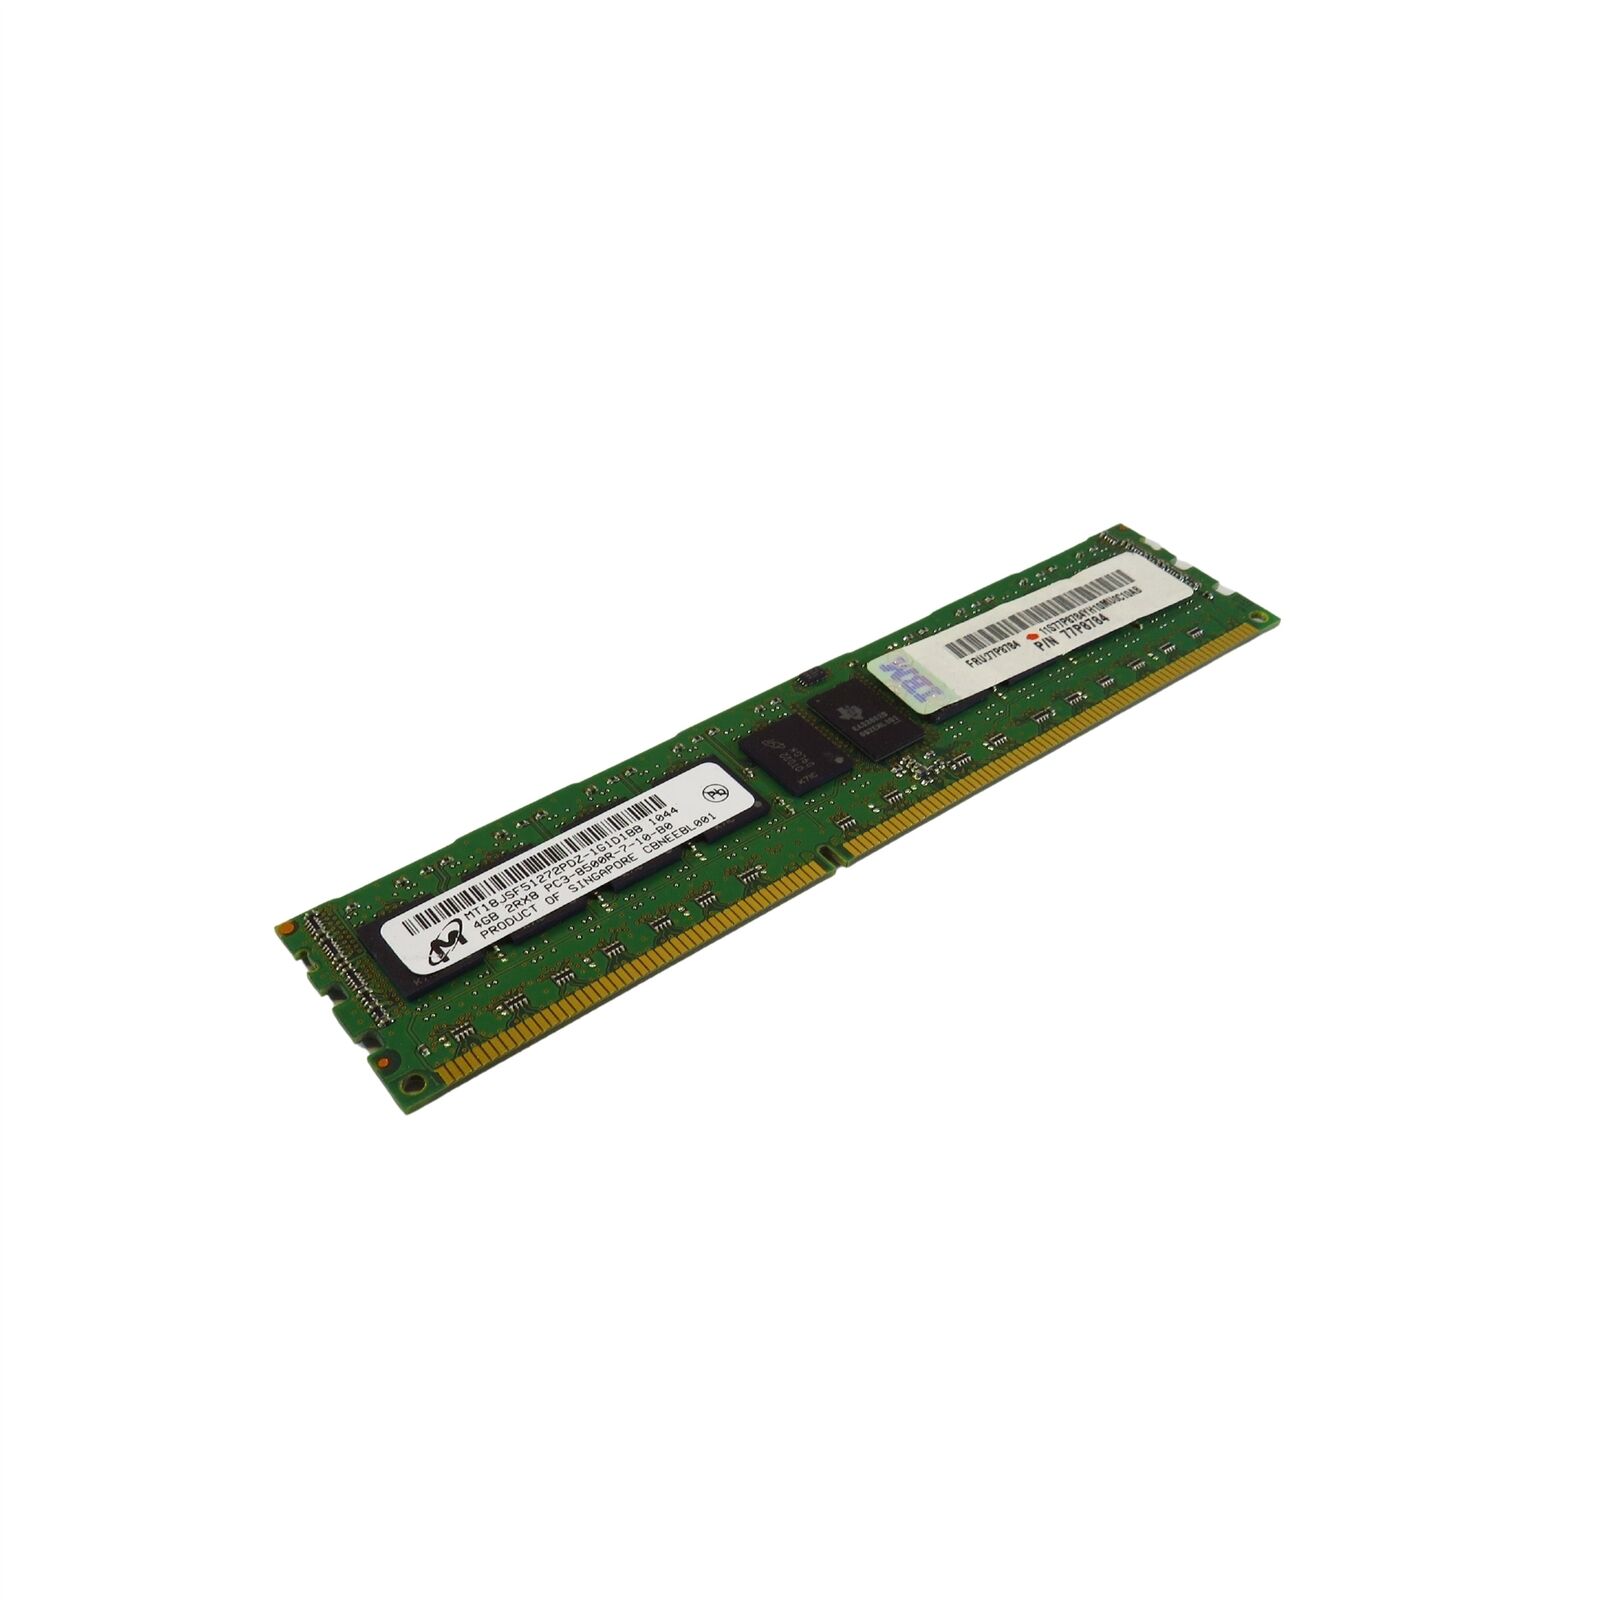 IBM 77P8784 4GB 2Rx8 PC3-8500R 1066MHz DDR3 ECC RDIMM Server Memory